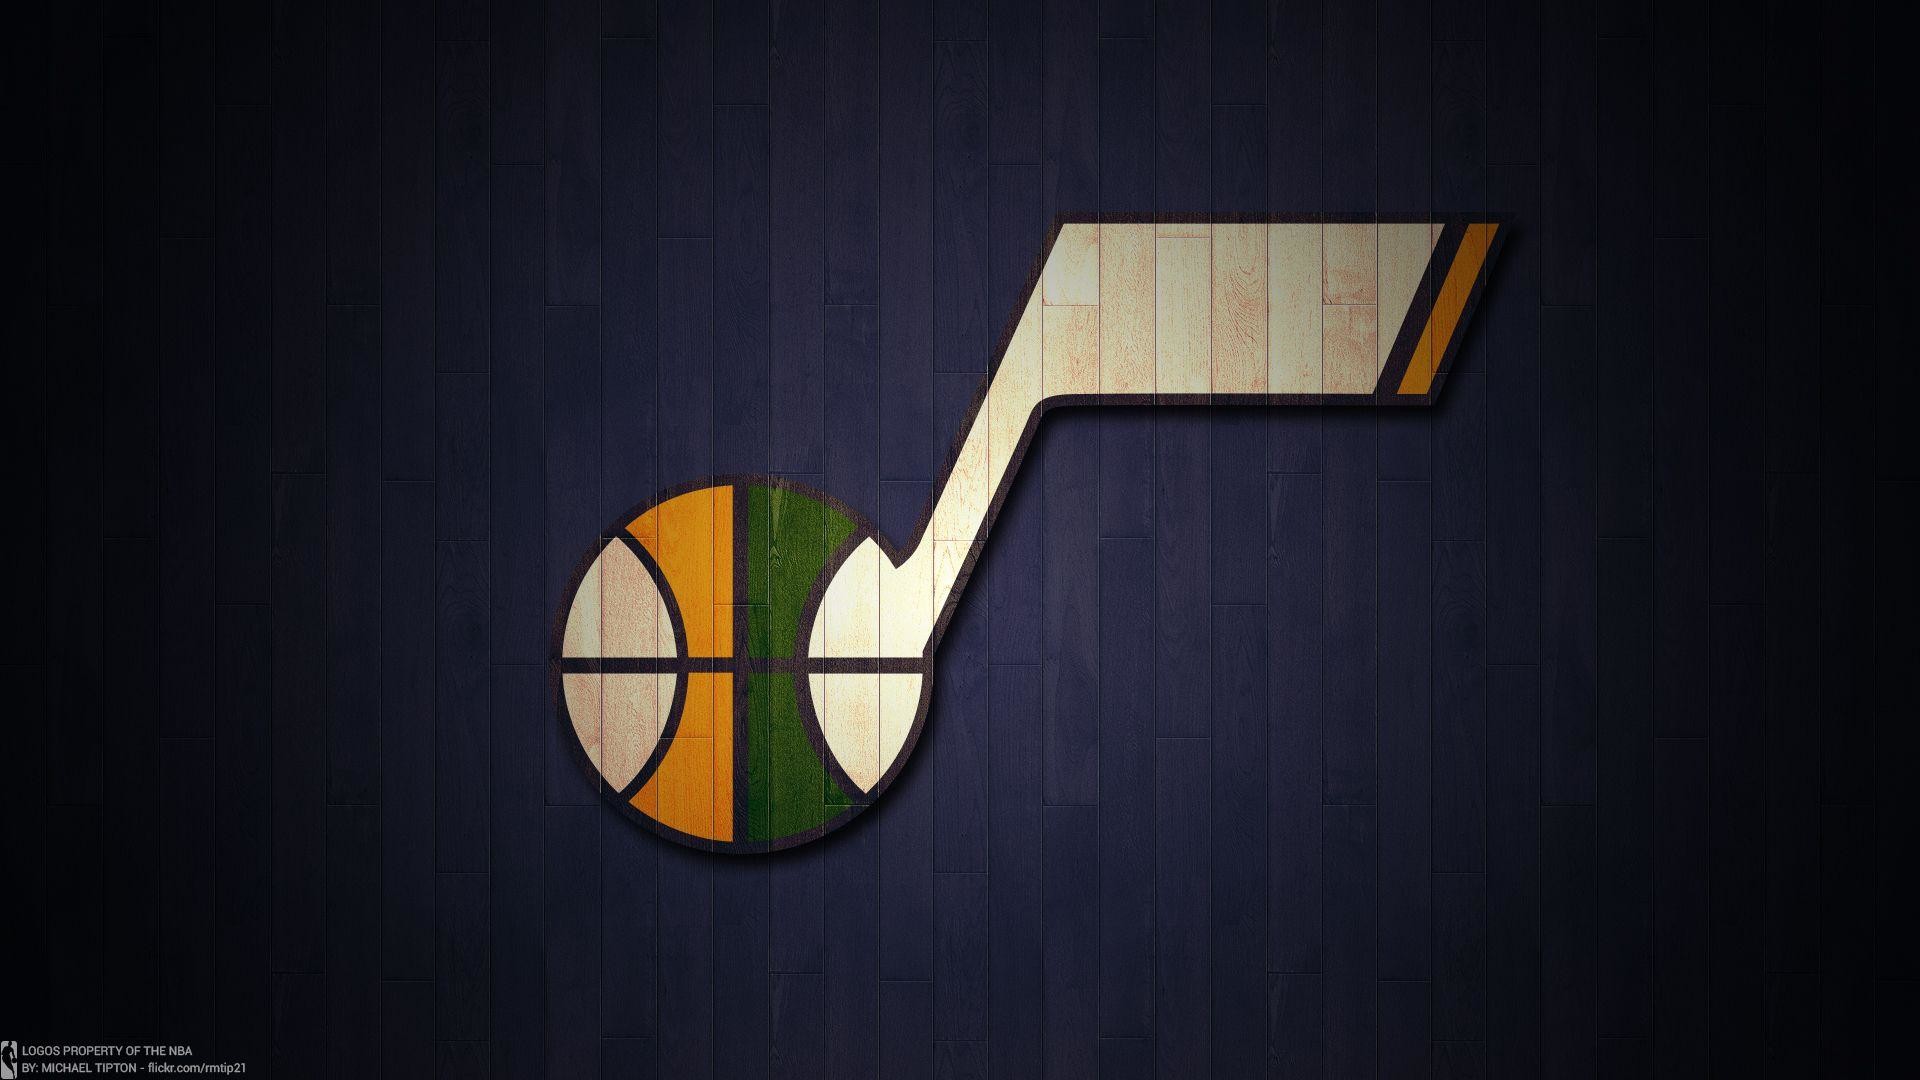 Utah Jazz HD Wallpaper